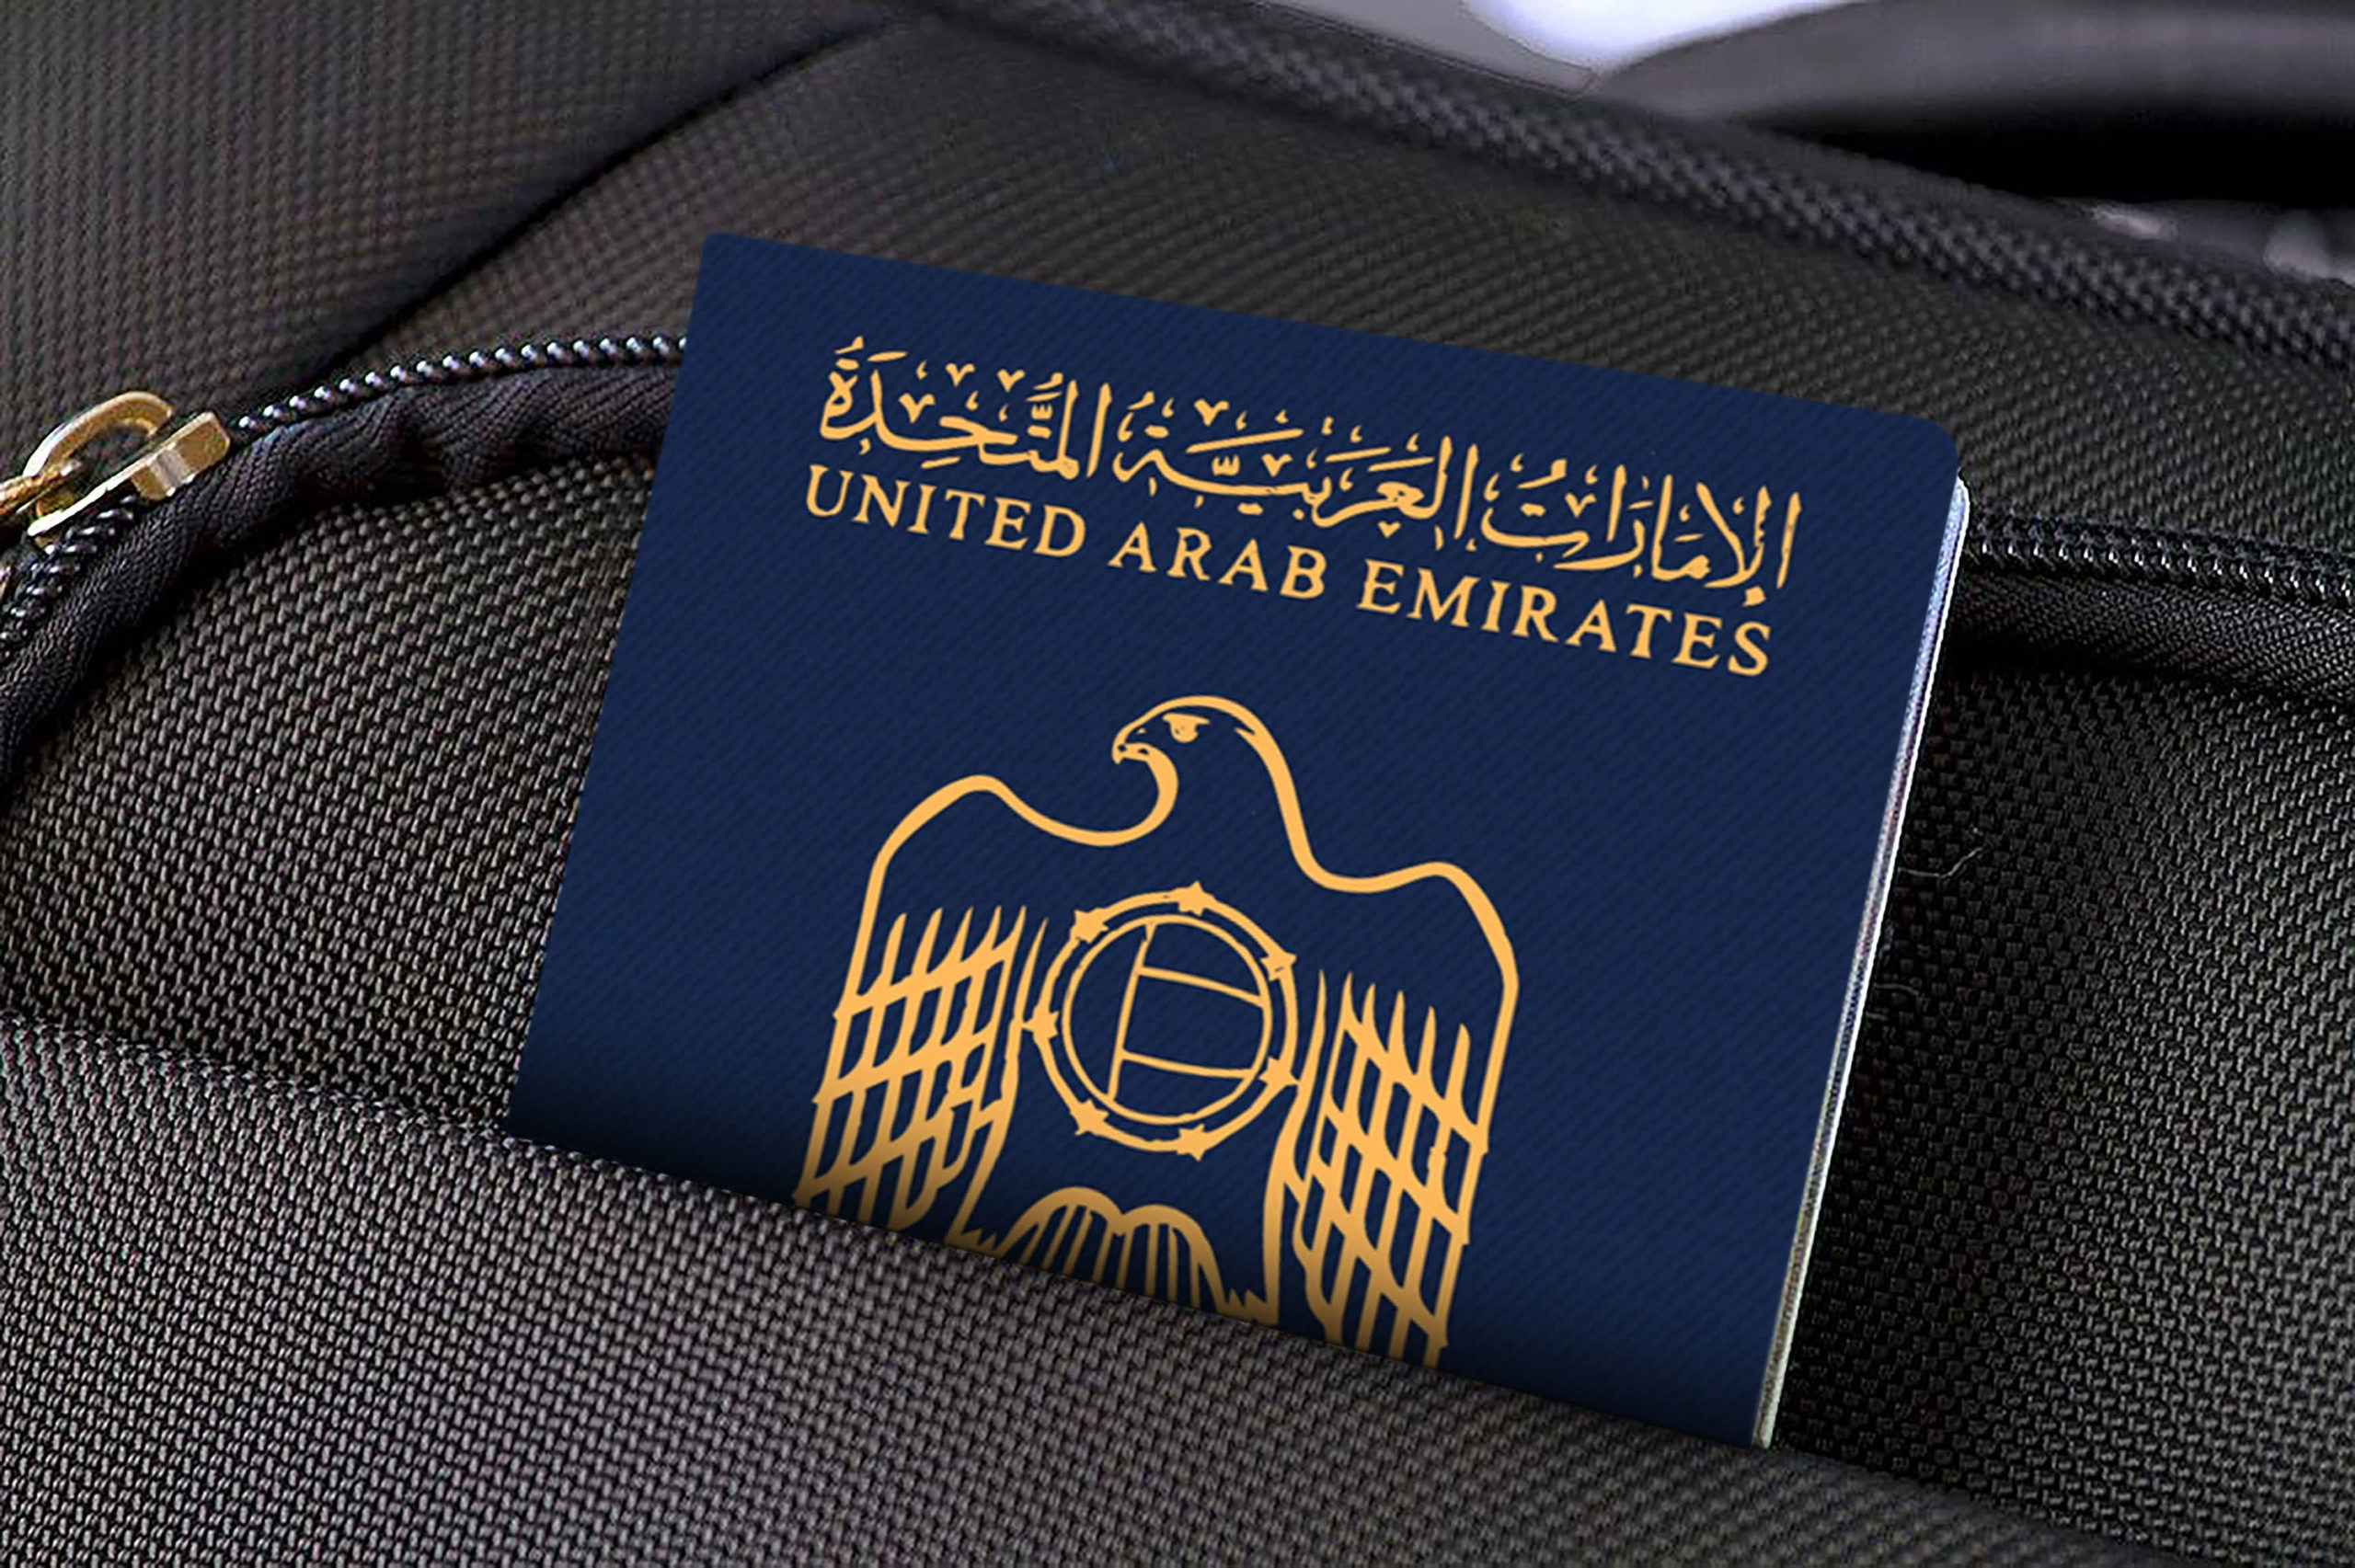 تا کمتر از یک سال پیش تنها تعداد معدودی از افراد که عمدتاً برای سال های سال ساکن امارات متحده عربی بودند می توانستند شهروندی امارات را به دست بیاورند.